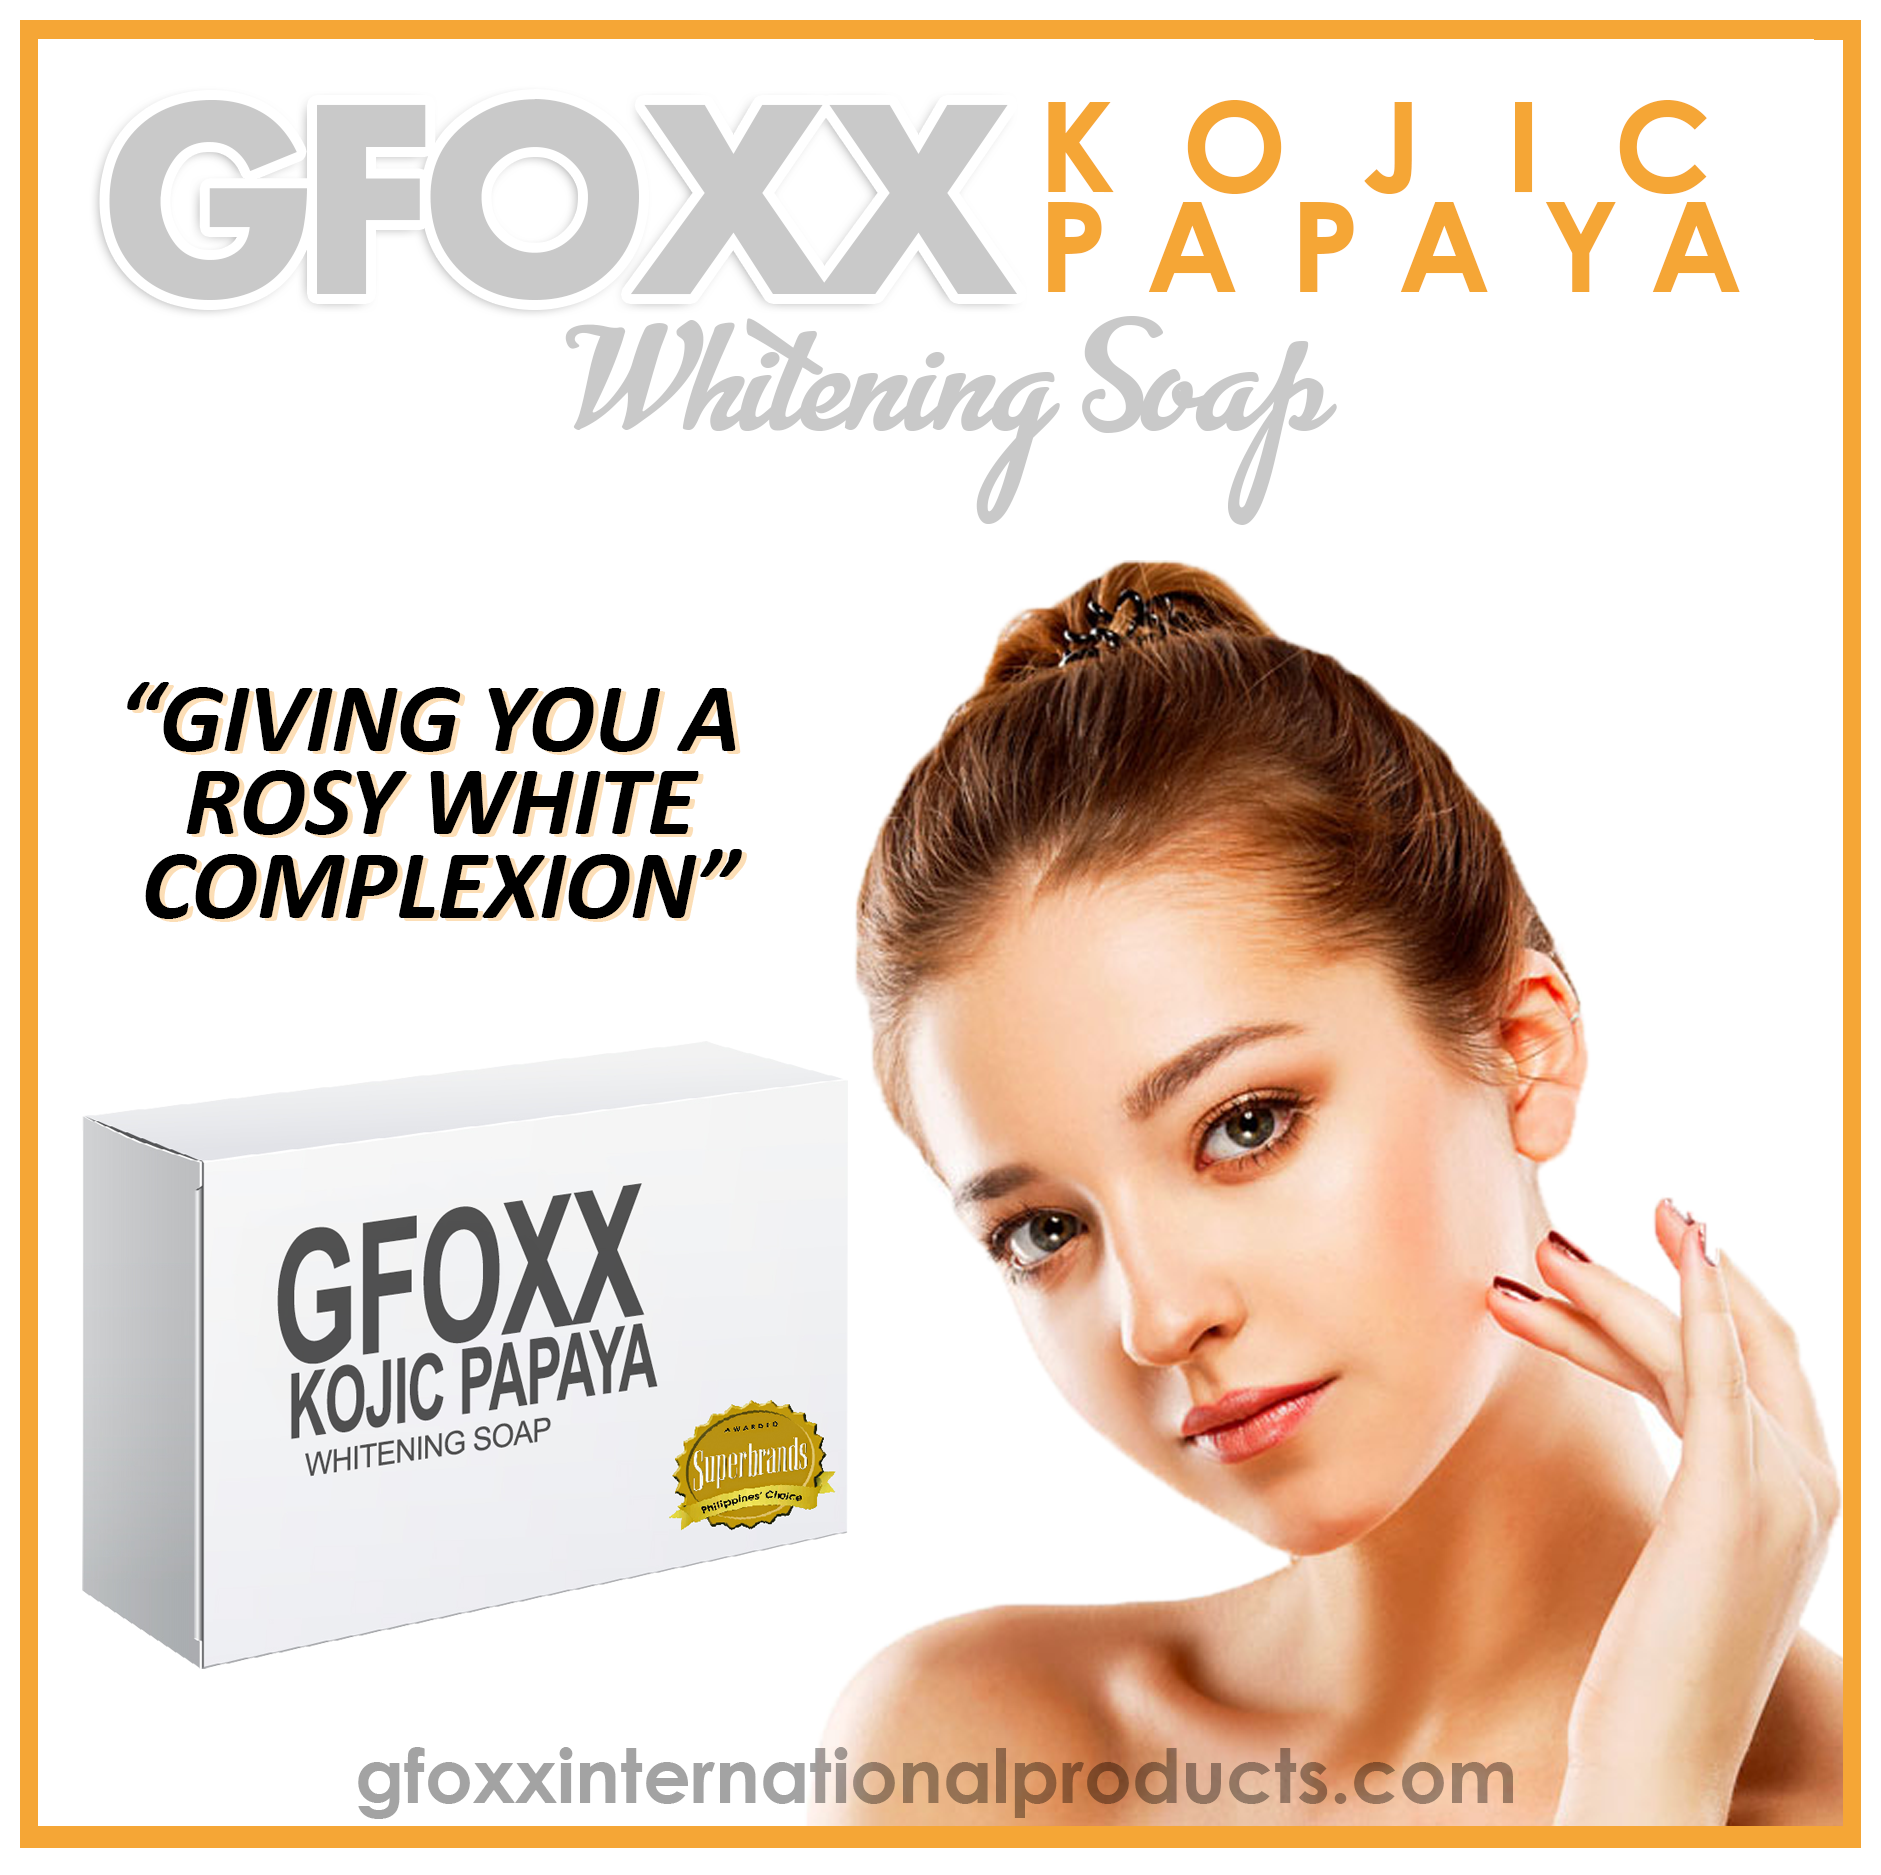 GFOXX Kojic Papaya Whitening Soap